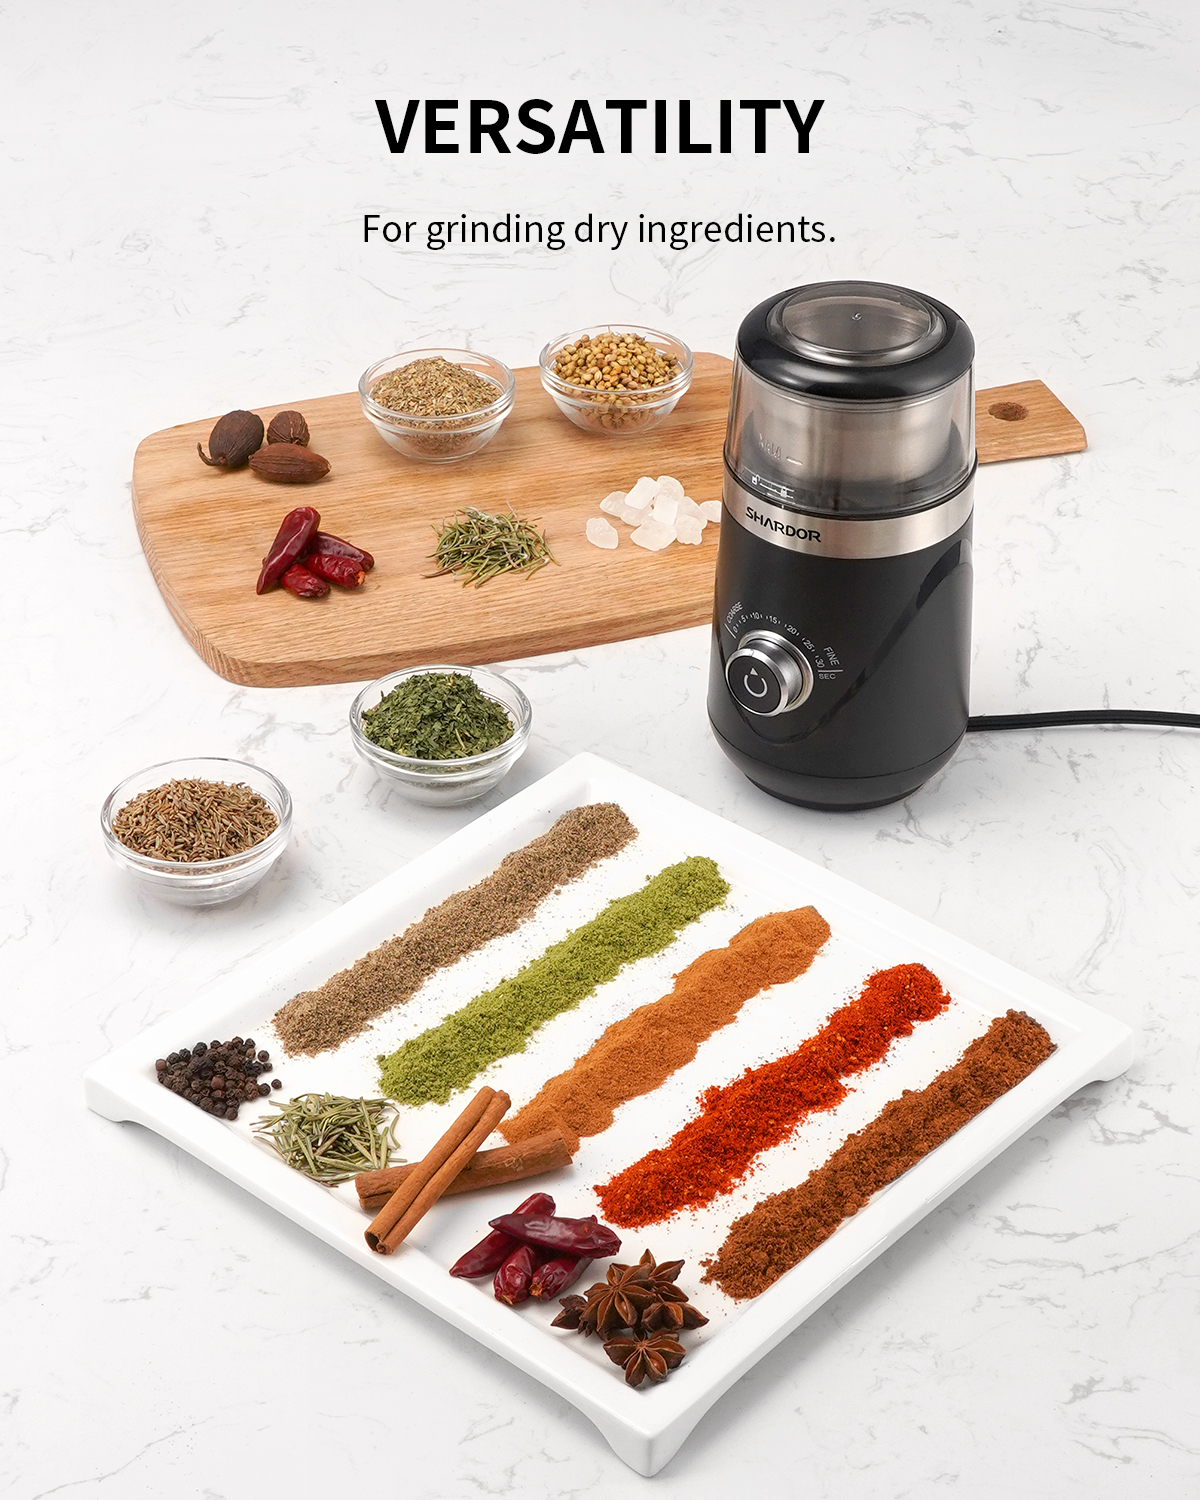 SHARDOR Adjustable Coffee Grinder Electric, Herb Grinder, Spice Grinde –  Kaffa Abode